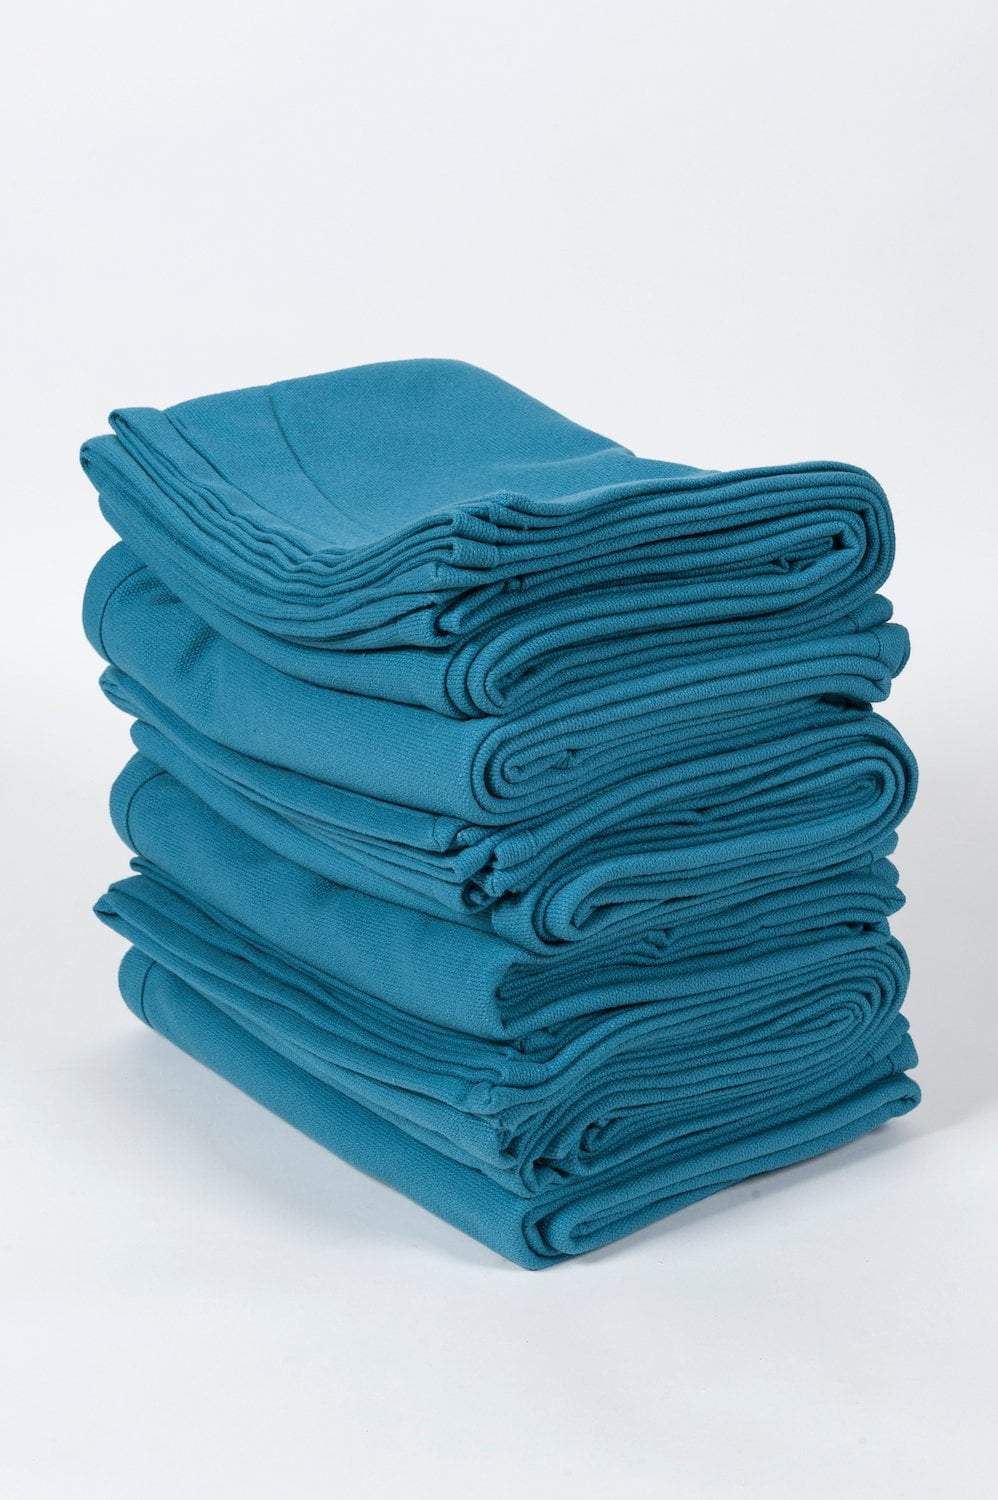 Organic Yoga Blankets - 10 Pack